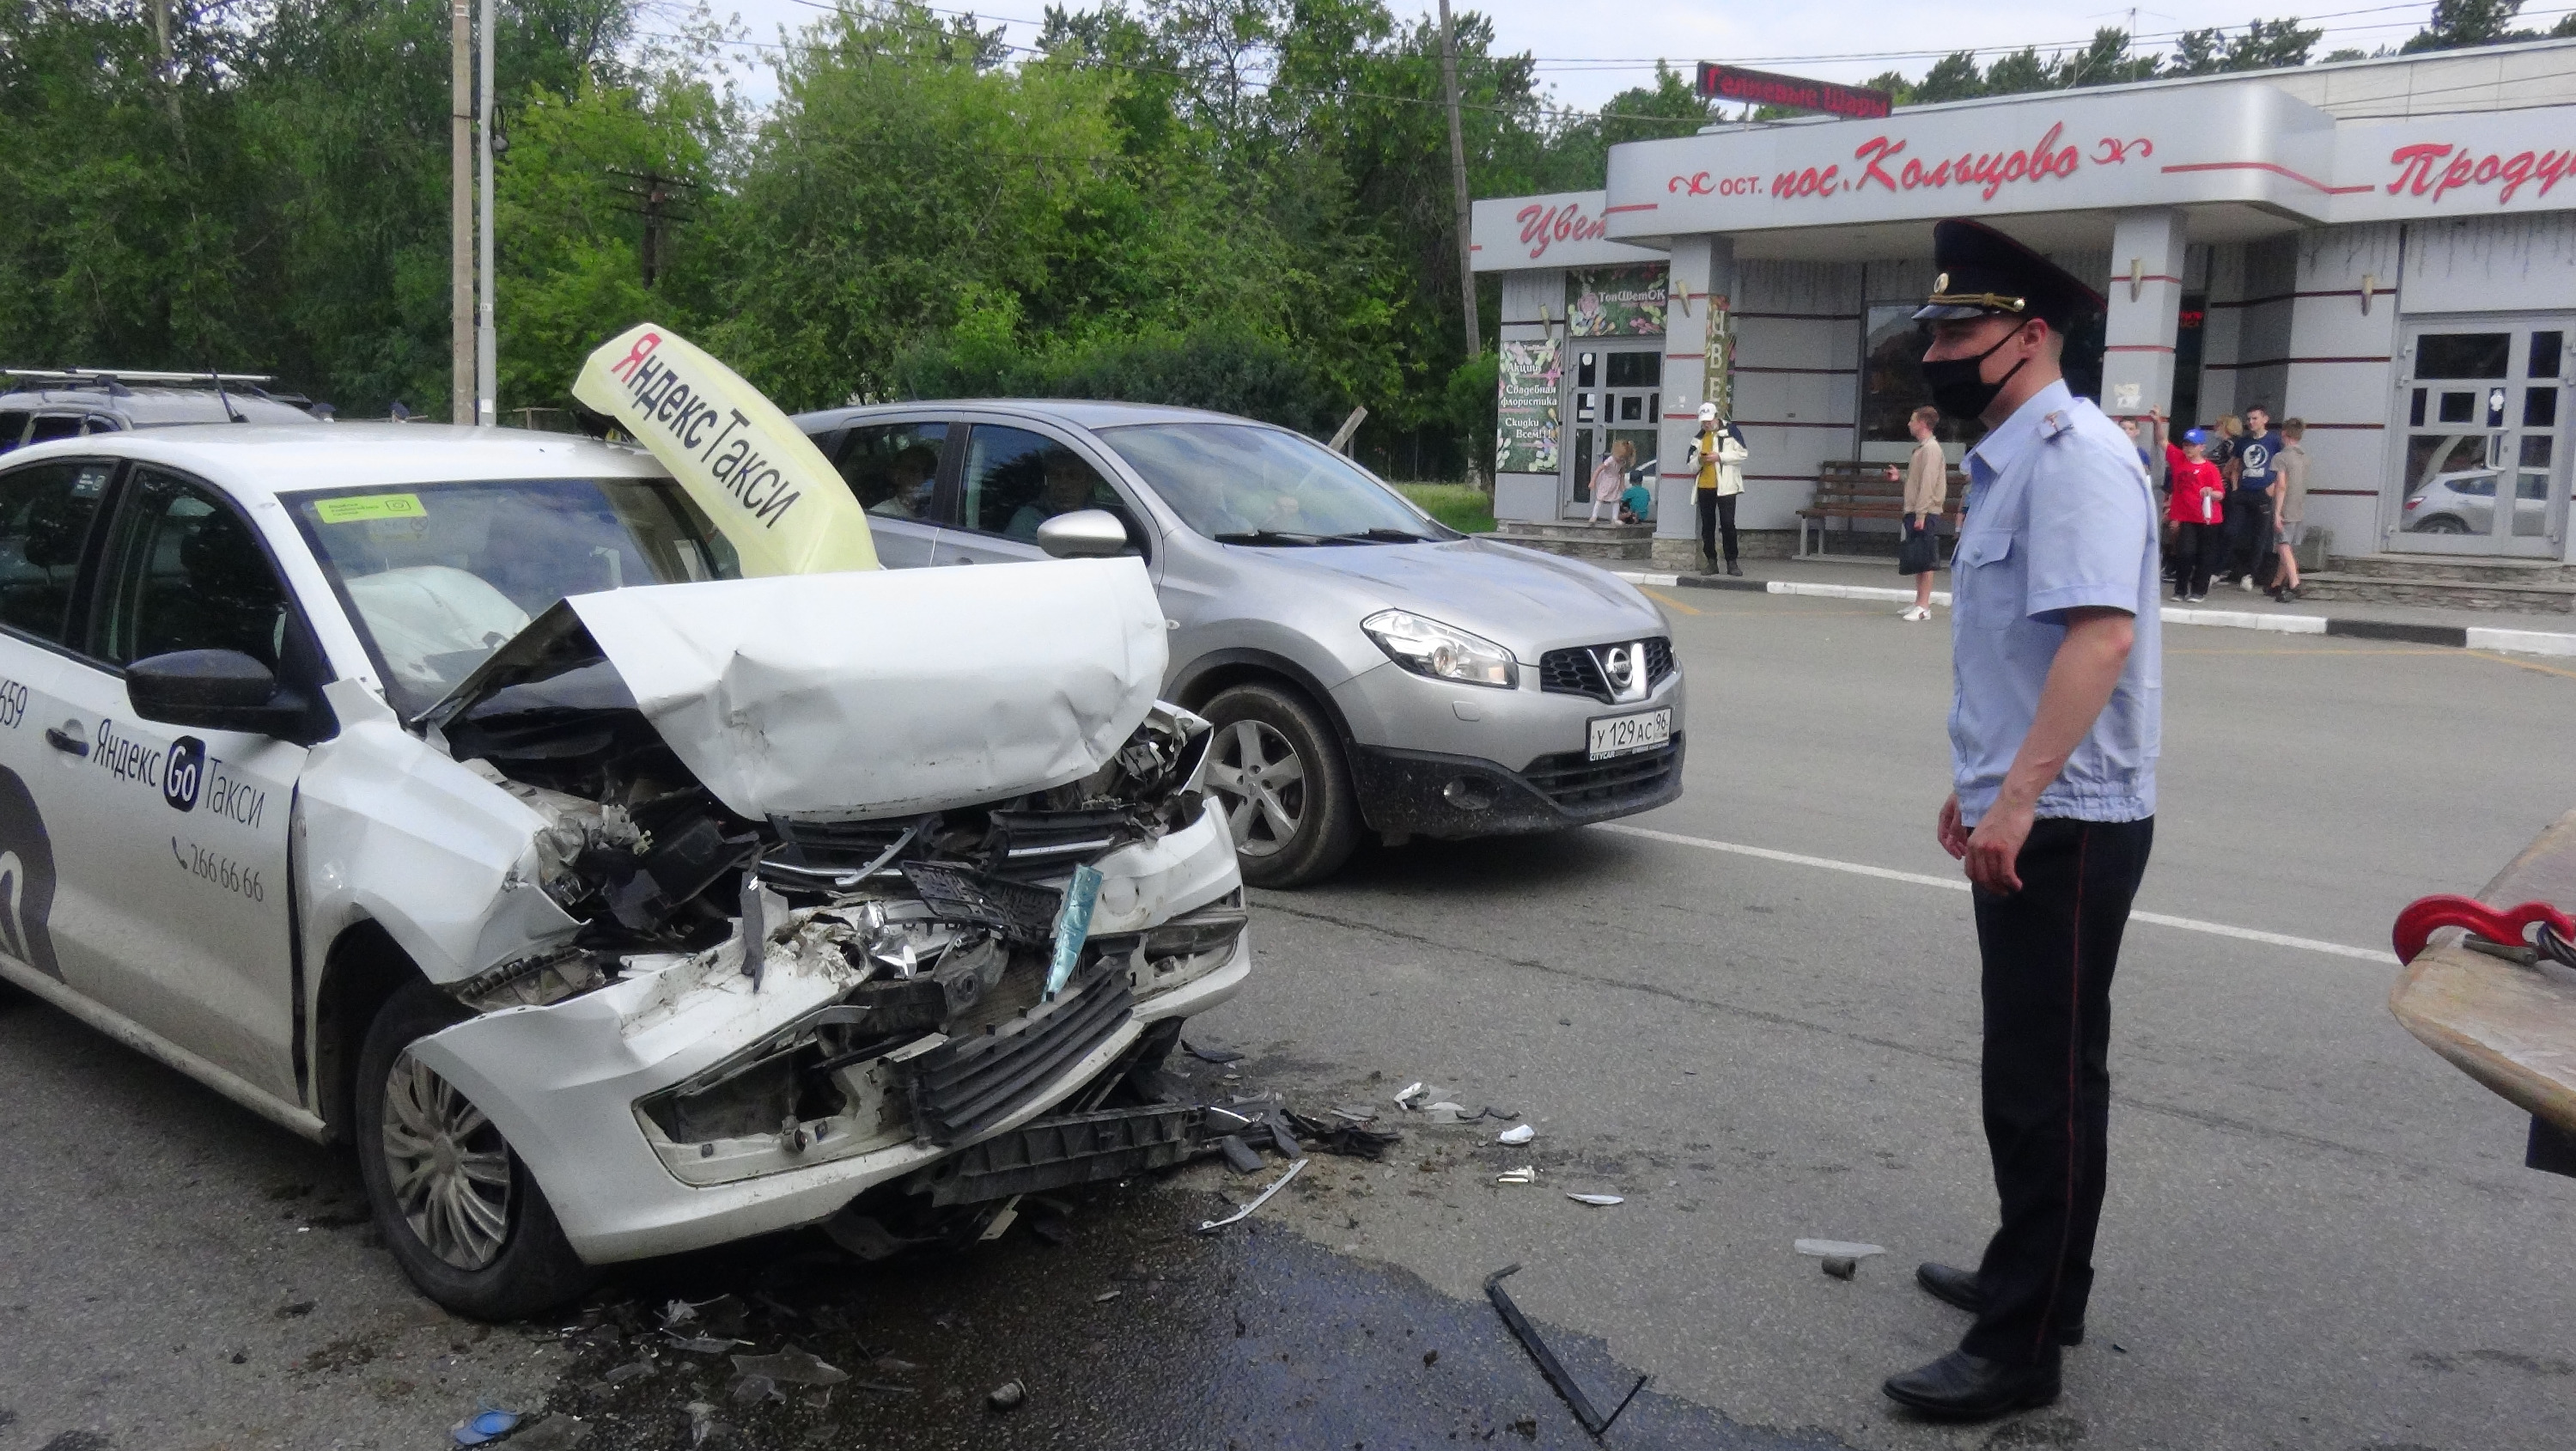 В Екатеринбурге таксист врезался в экскаватор, когда вез на учебу троих студенток. Все в больнице